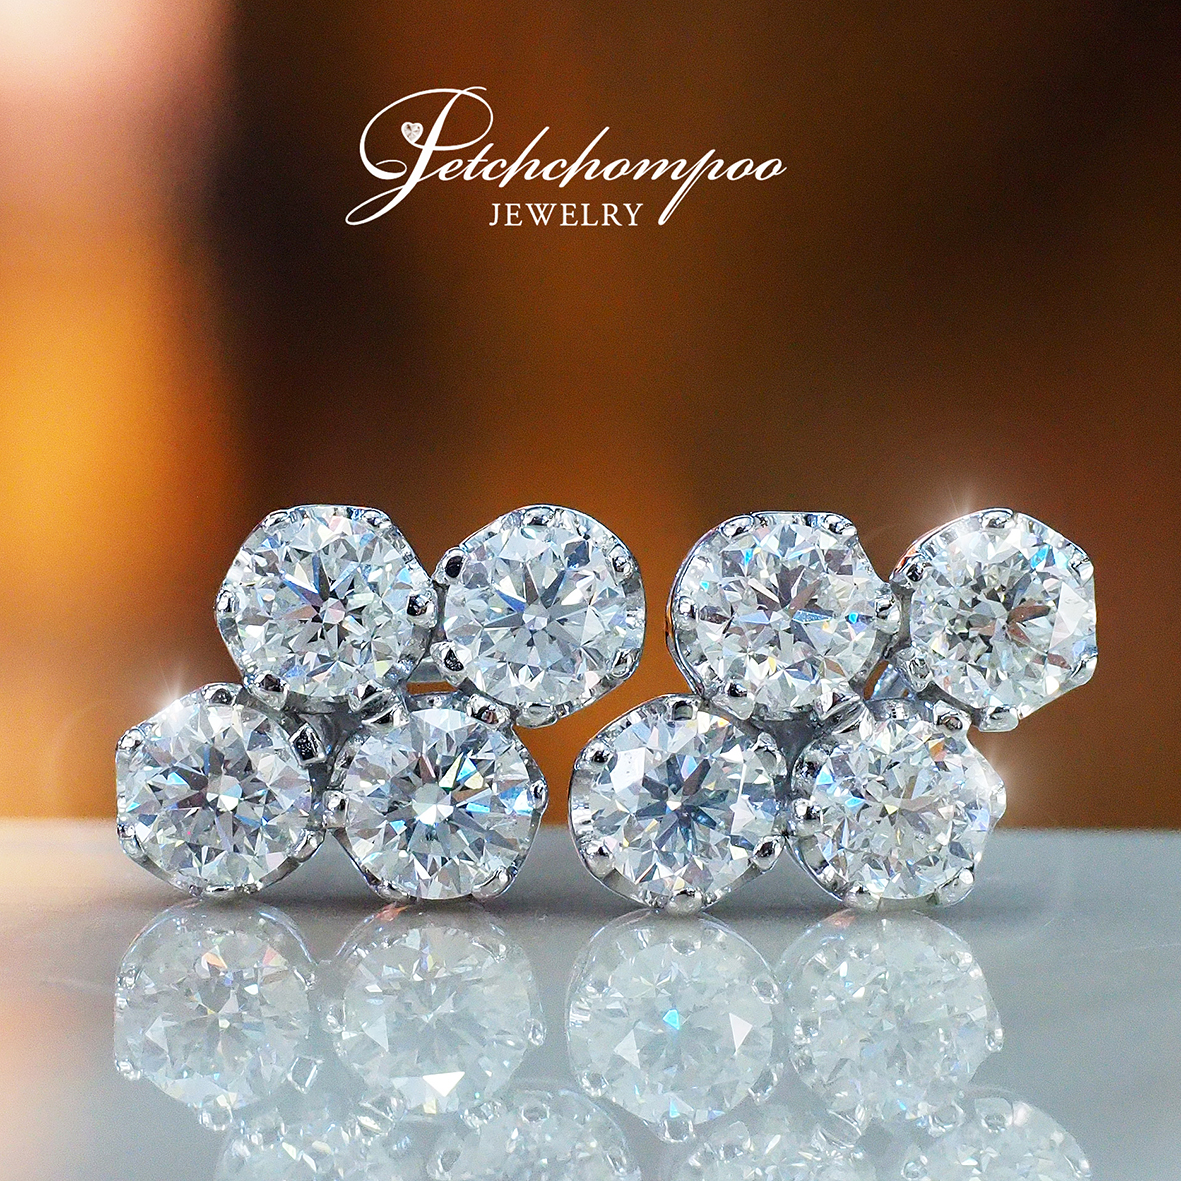 [27428] Diamond earrings.  159,000 